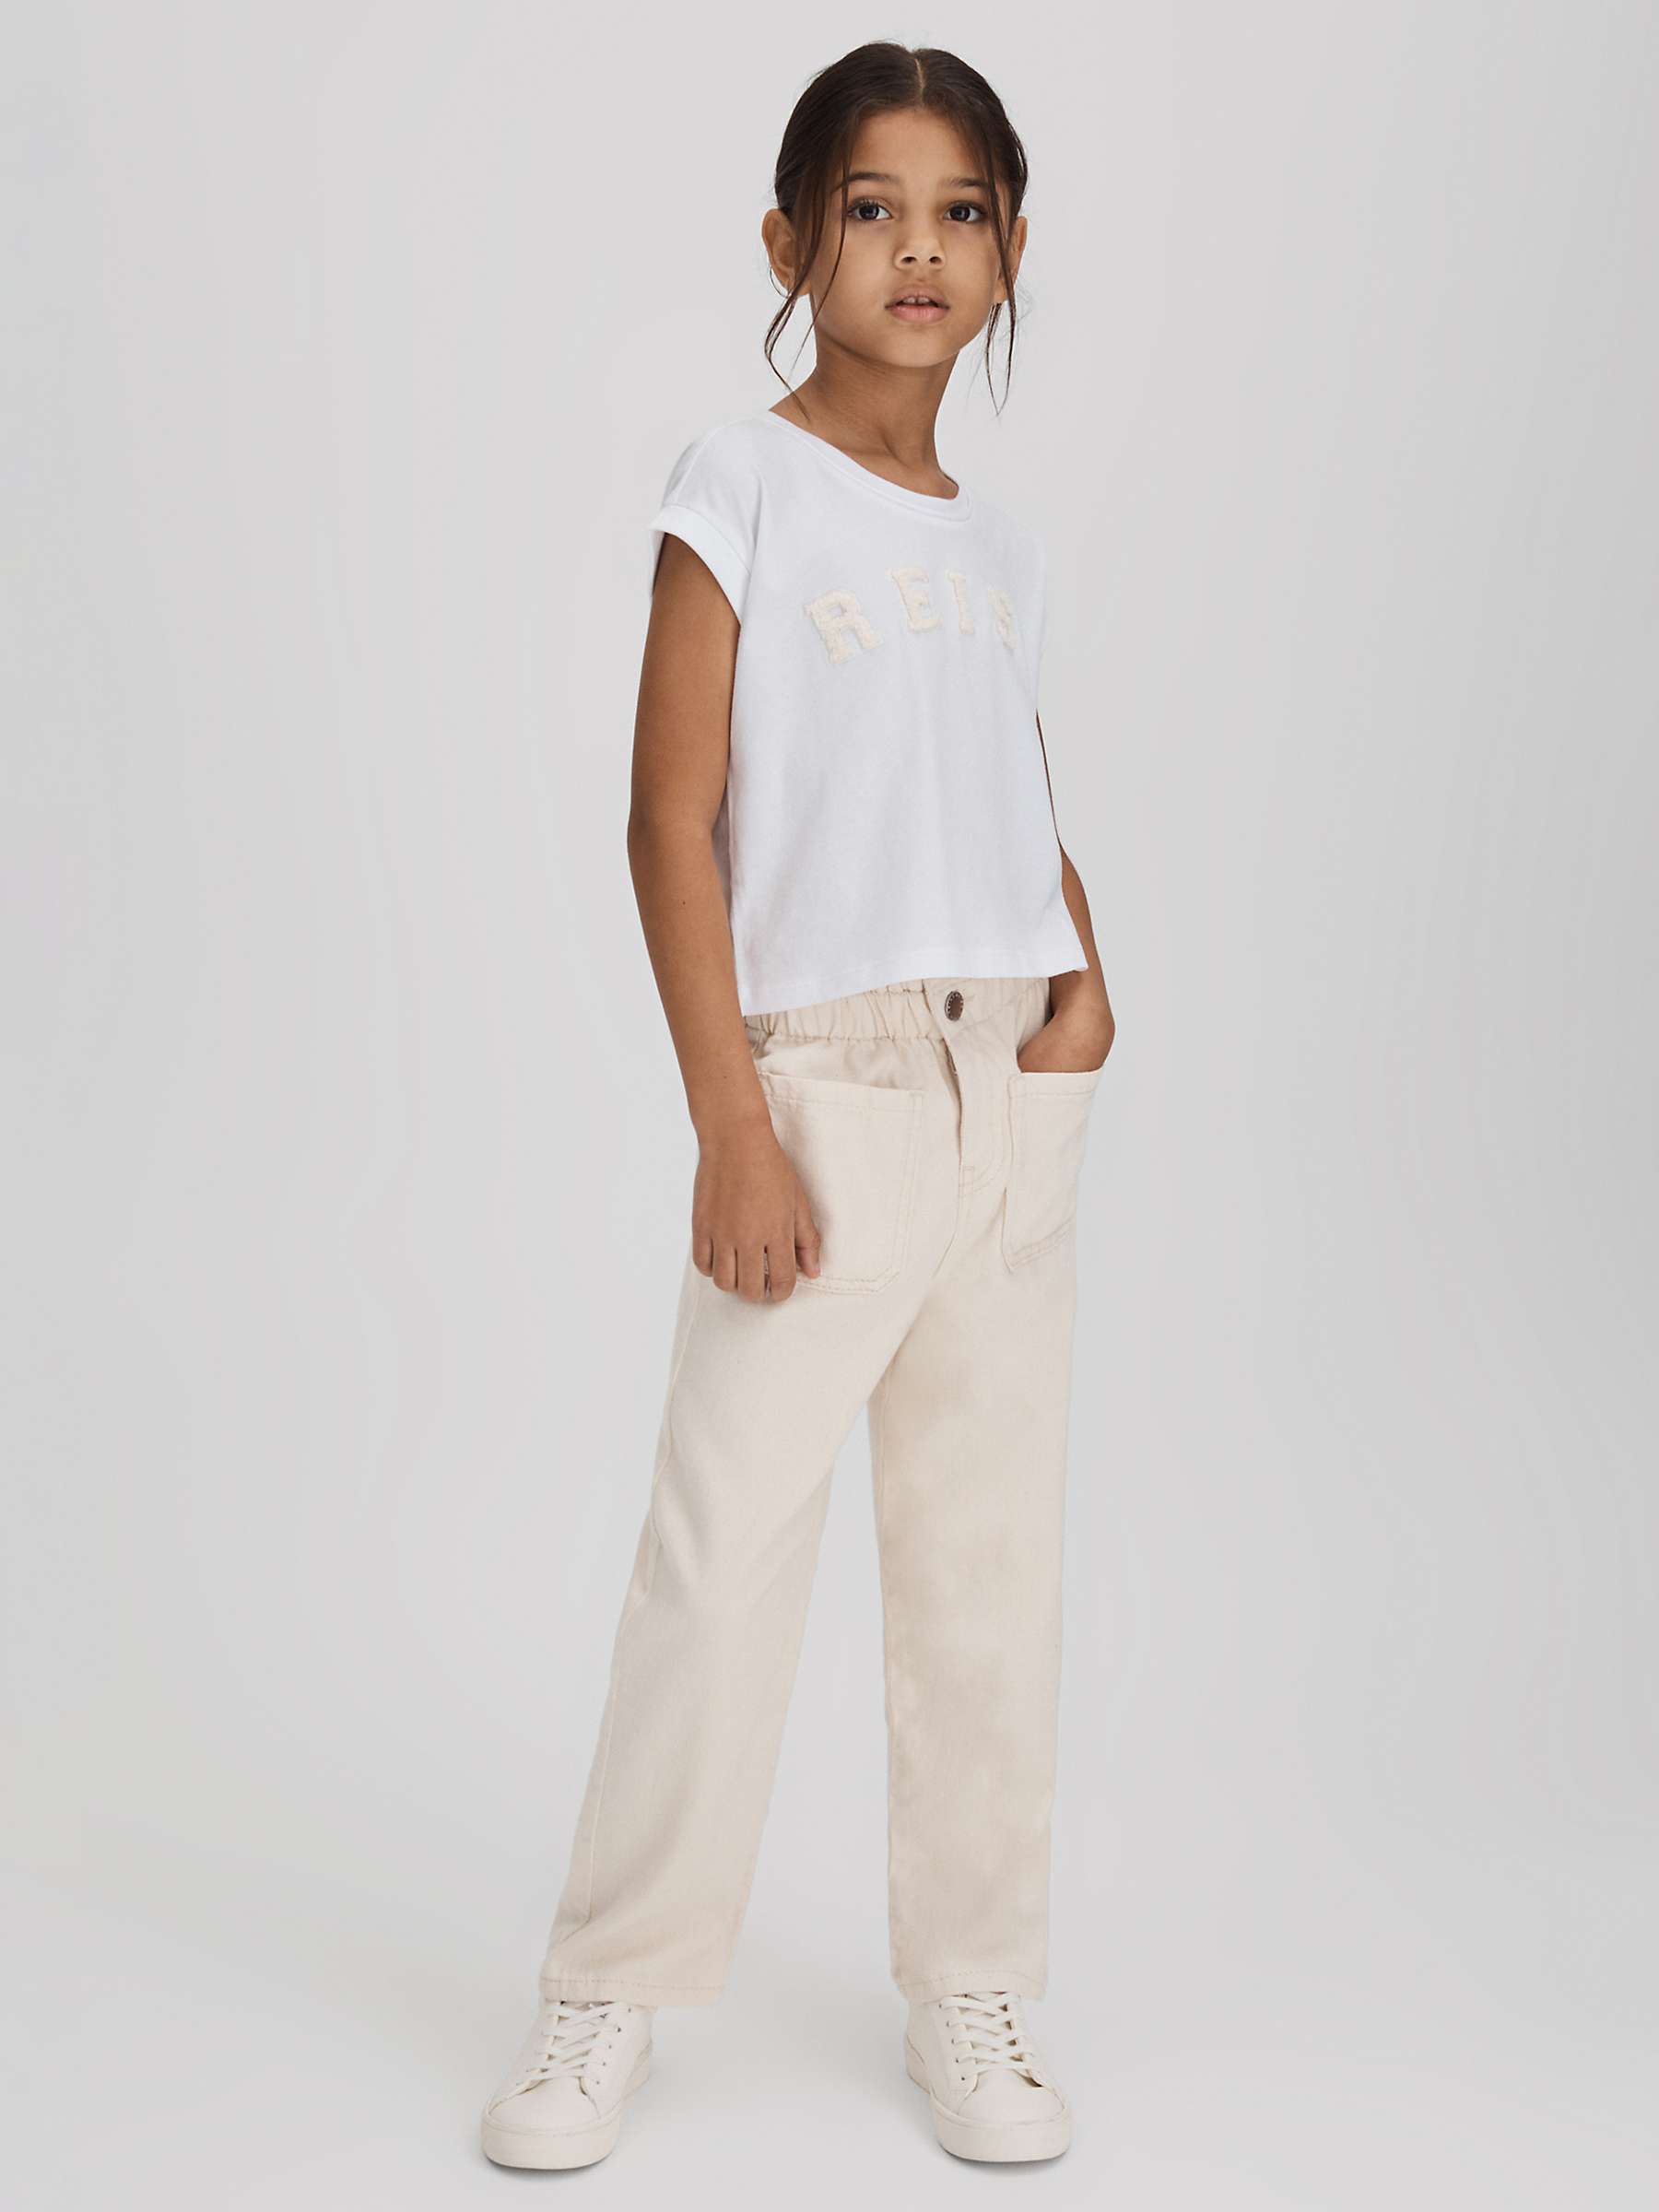 Buy Reiss Kids' Taya Cropped Varsity T-Shirt, White Online at johnlewis.com